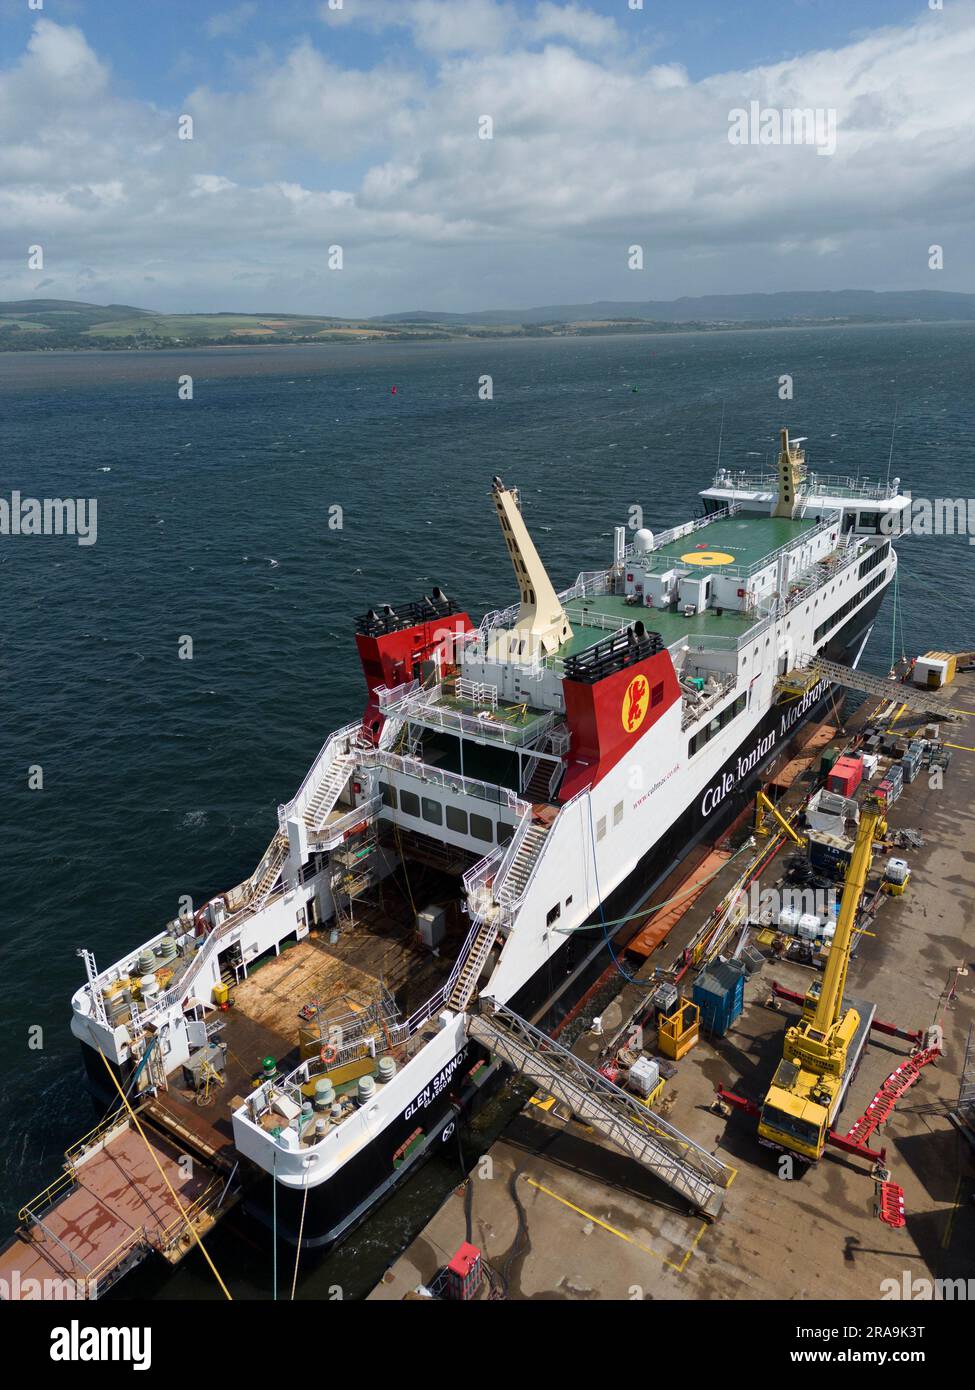 Le ultime viste aeree del traghetto passeggeri MV Glen Sannox in fase di costruzione presso il cantiere navale Ferguson di Port Glasgow. Scozia, Regno Unito Foto Stock